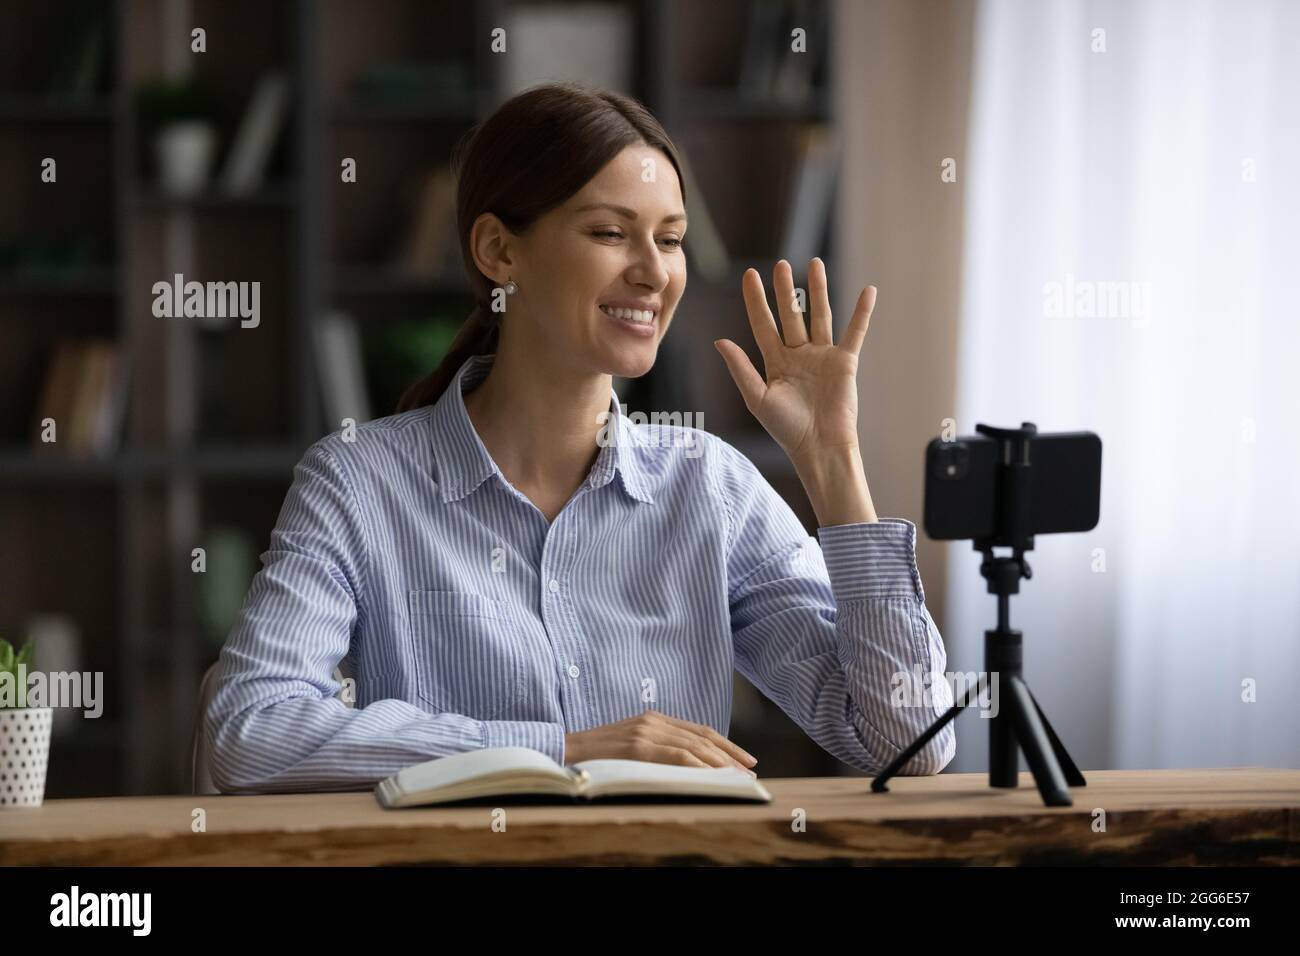 Lächelnde Frau winkt mit der Hand, nutzt das Smartphone auf dem Stativ und nimmt Videos auf Stockfoto